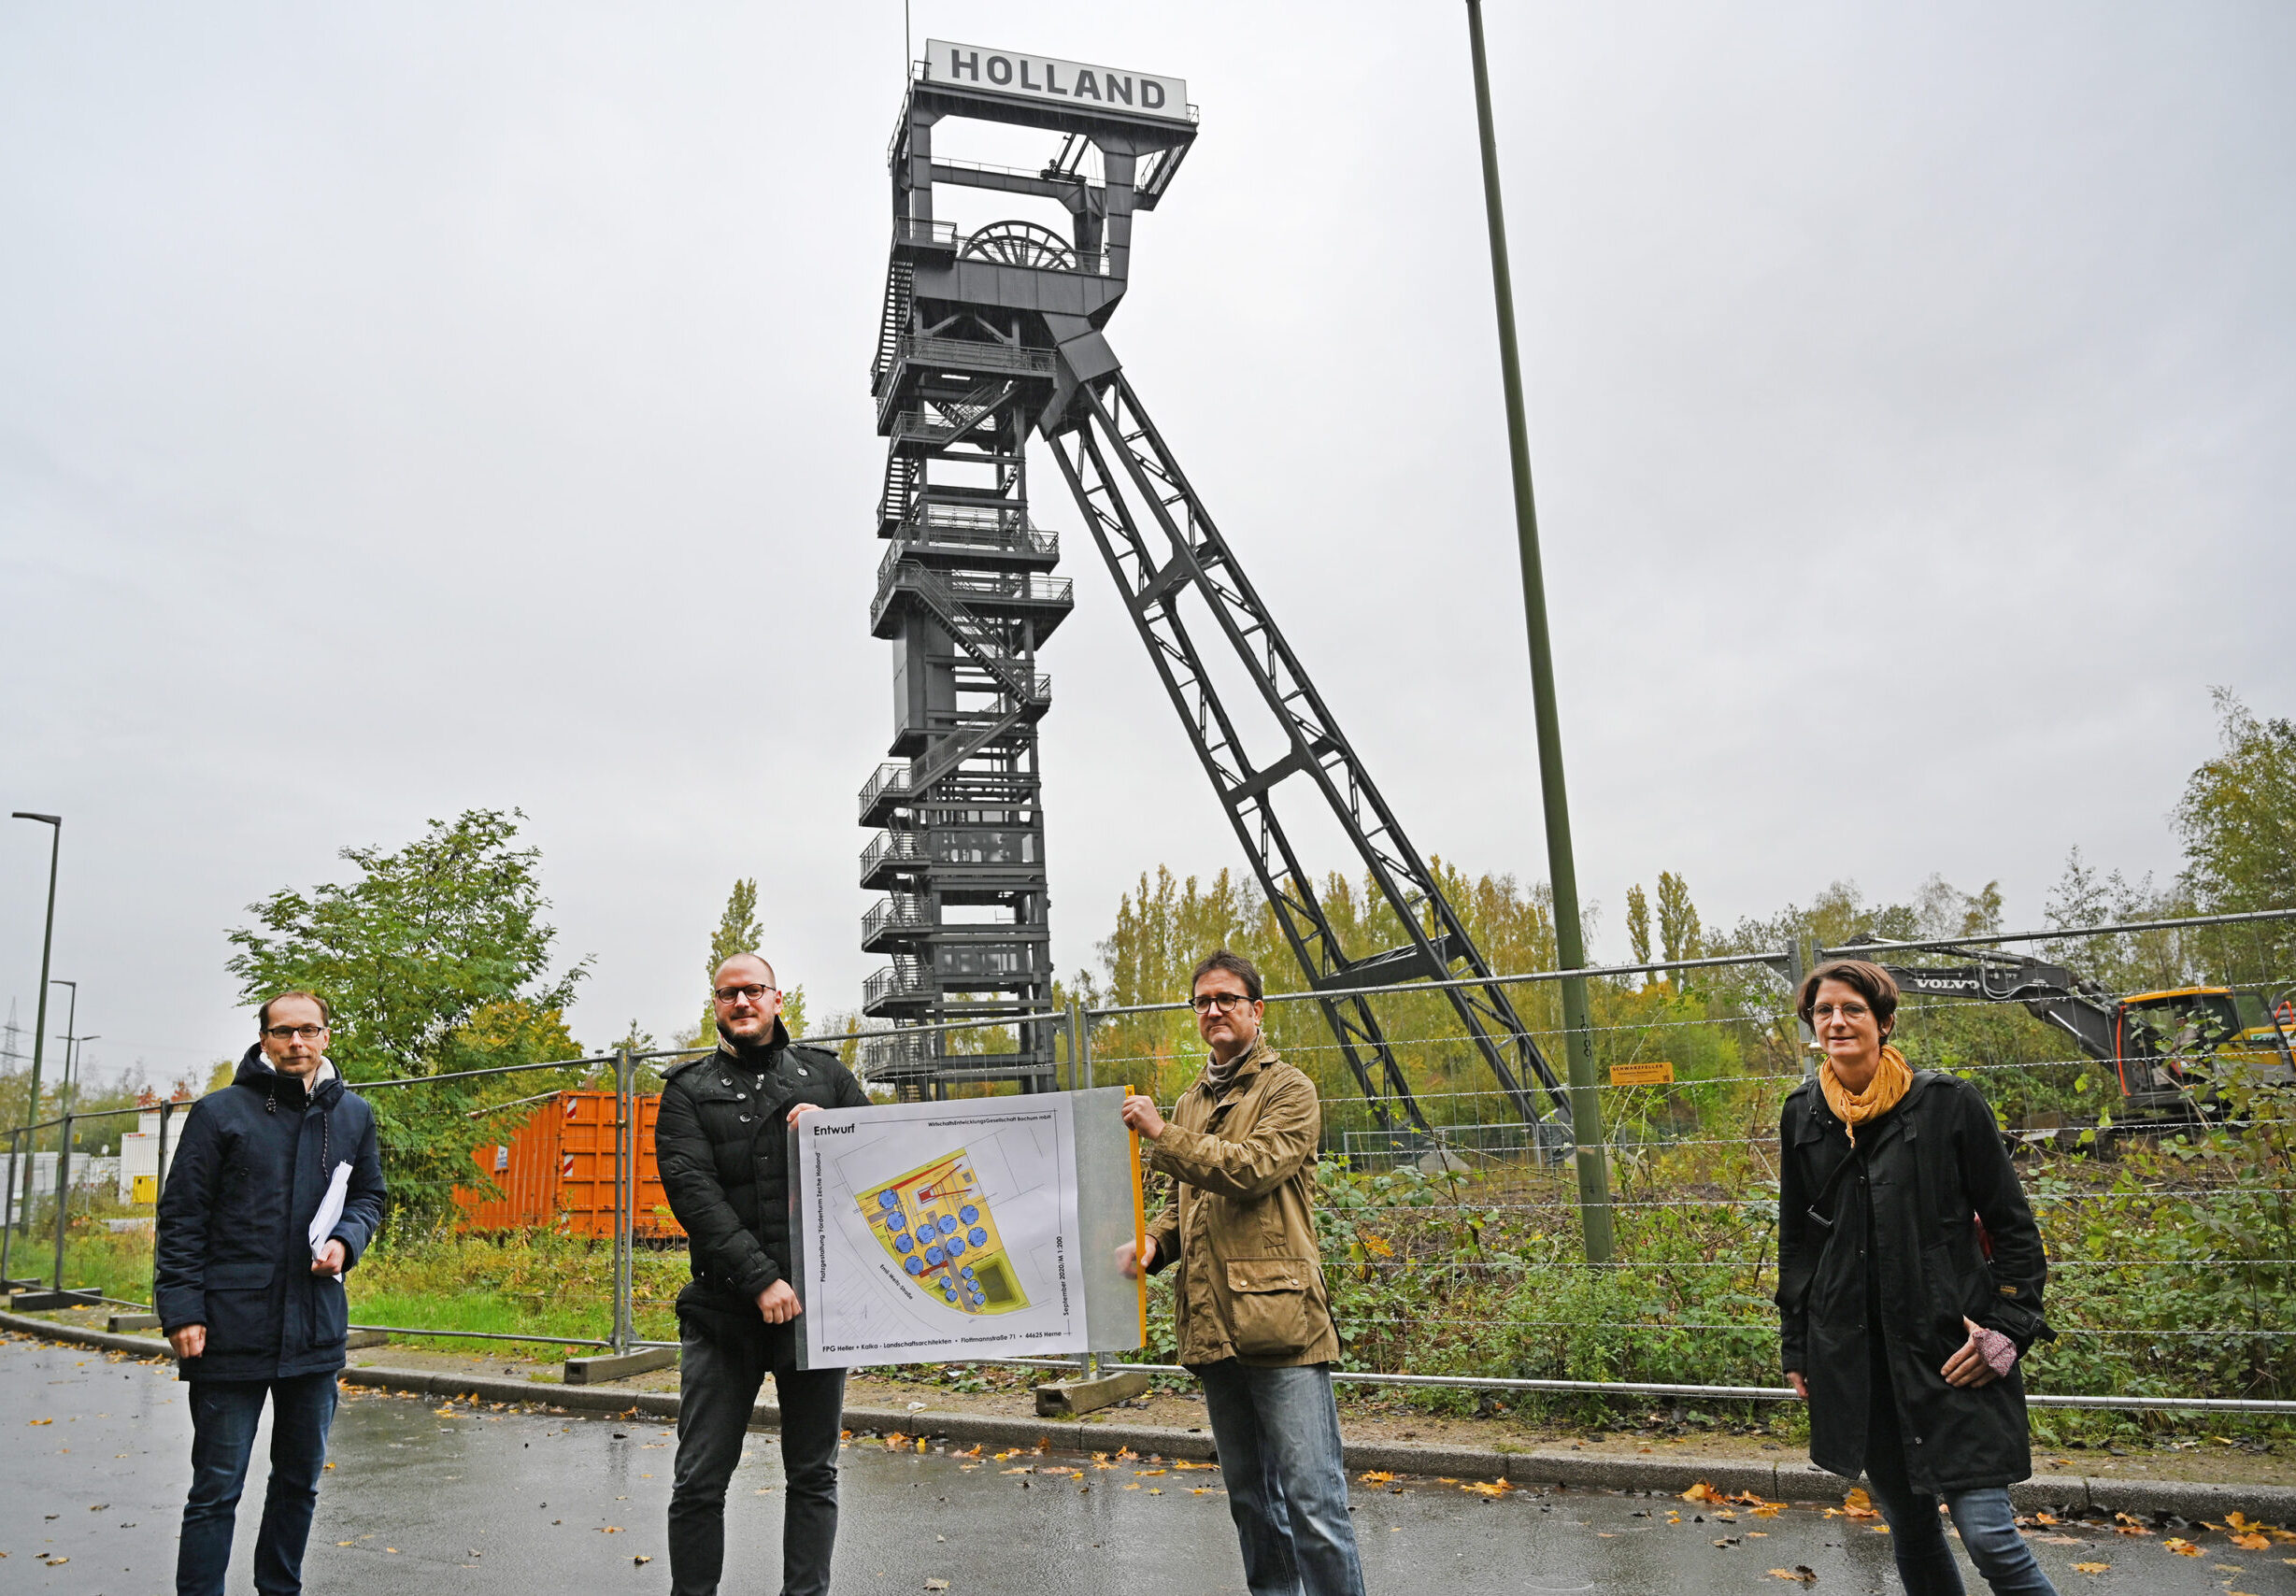 Platzgestaltung Förderturm Zeche Holland 21.10.2020 Foto: André Grabowski / Stadt Bochum, Referat für politische Gremien, Bürgerbeteiligung und Kommunikation